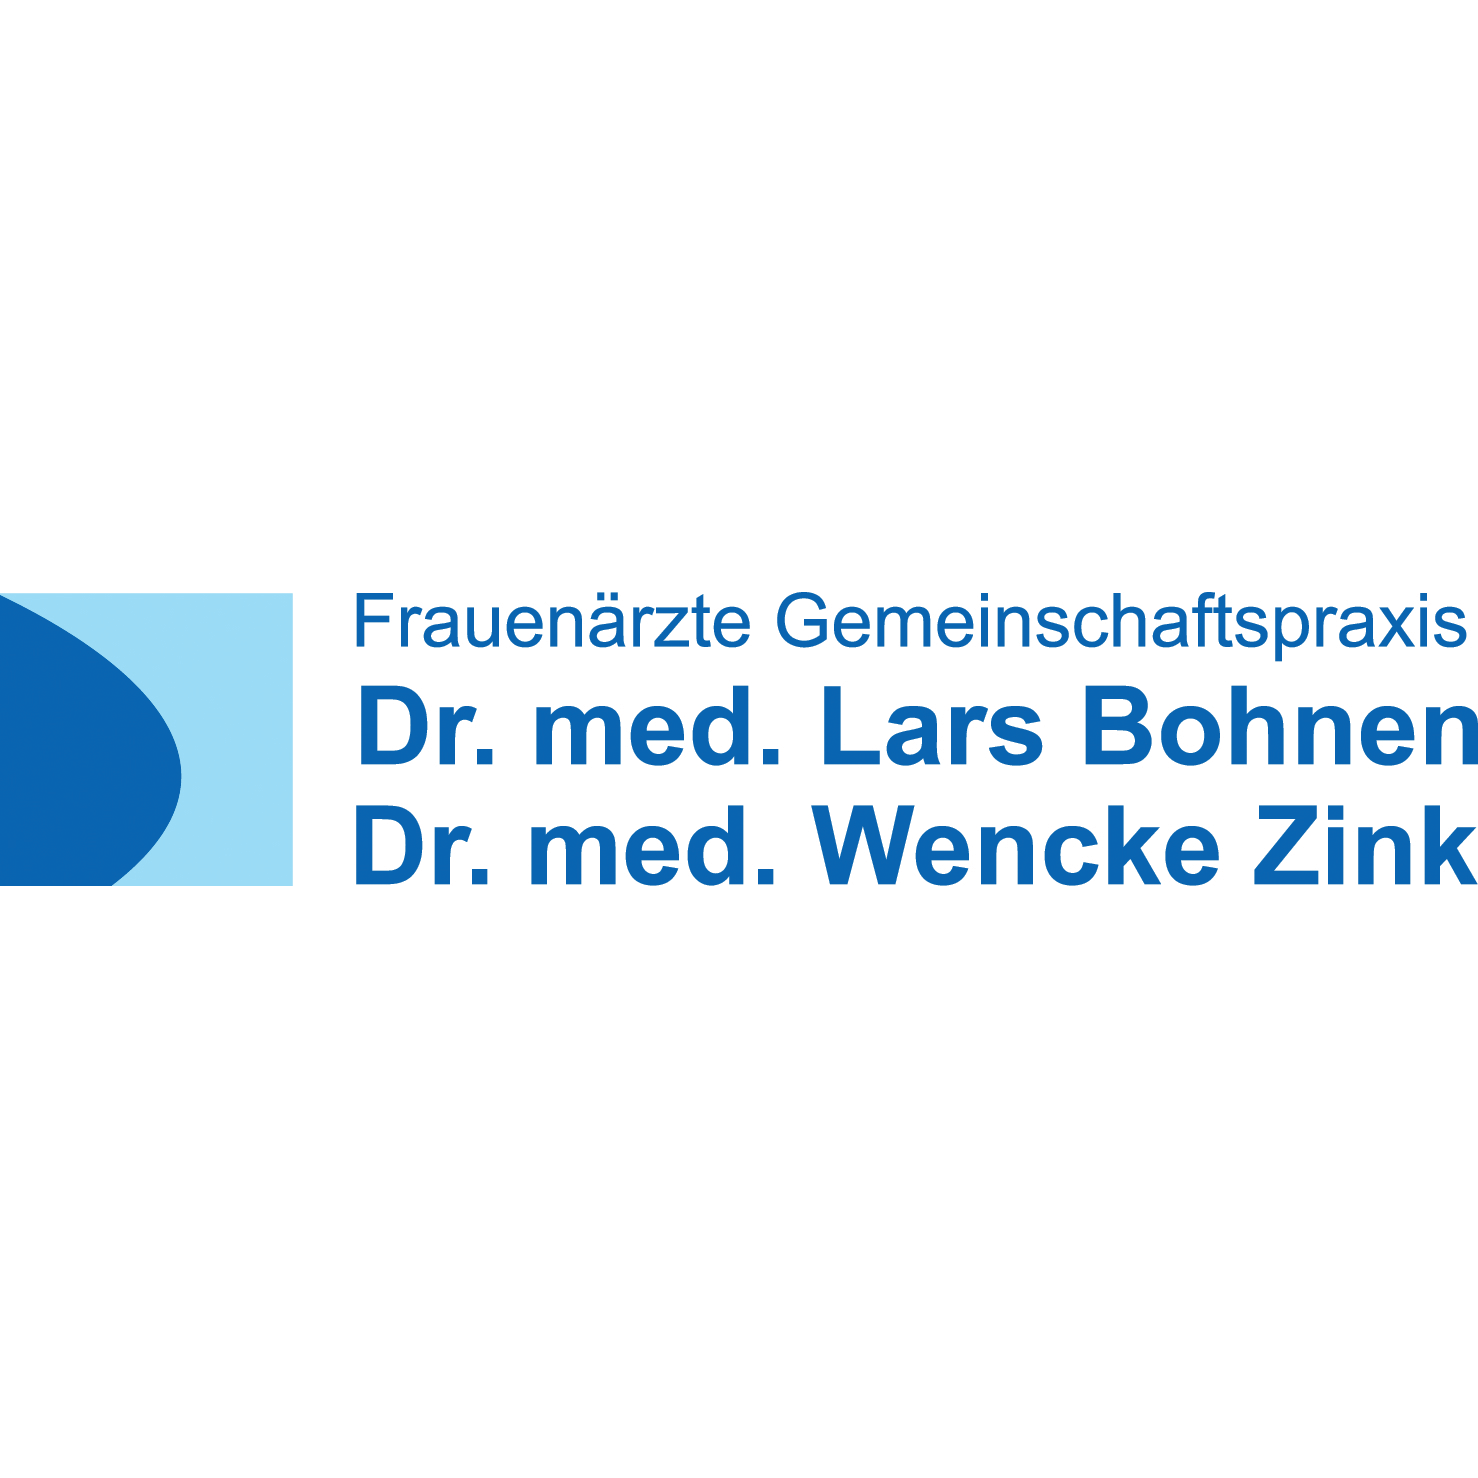 Logo von Frauenärzte Gemeinschaftspraxis Dr. med. Lars Bohnen Dr. med. Wencke Zink